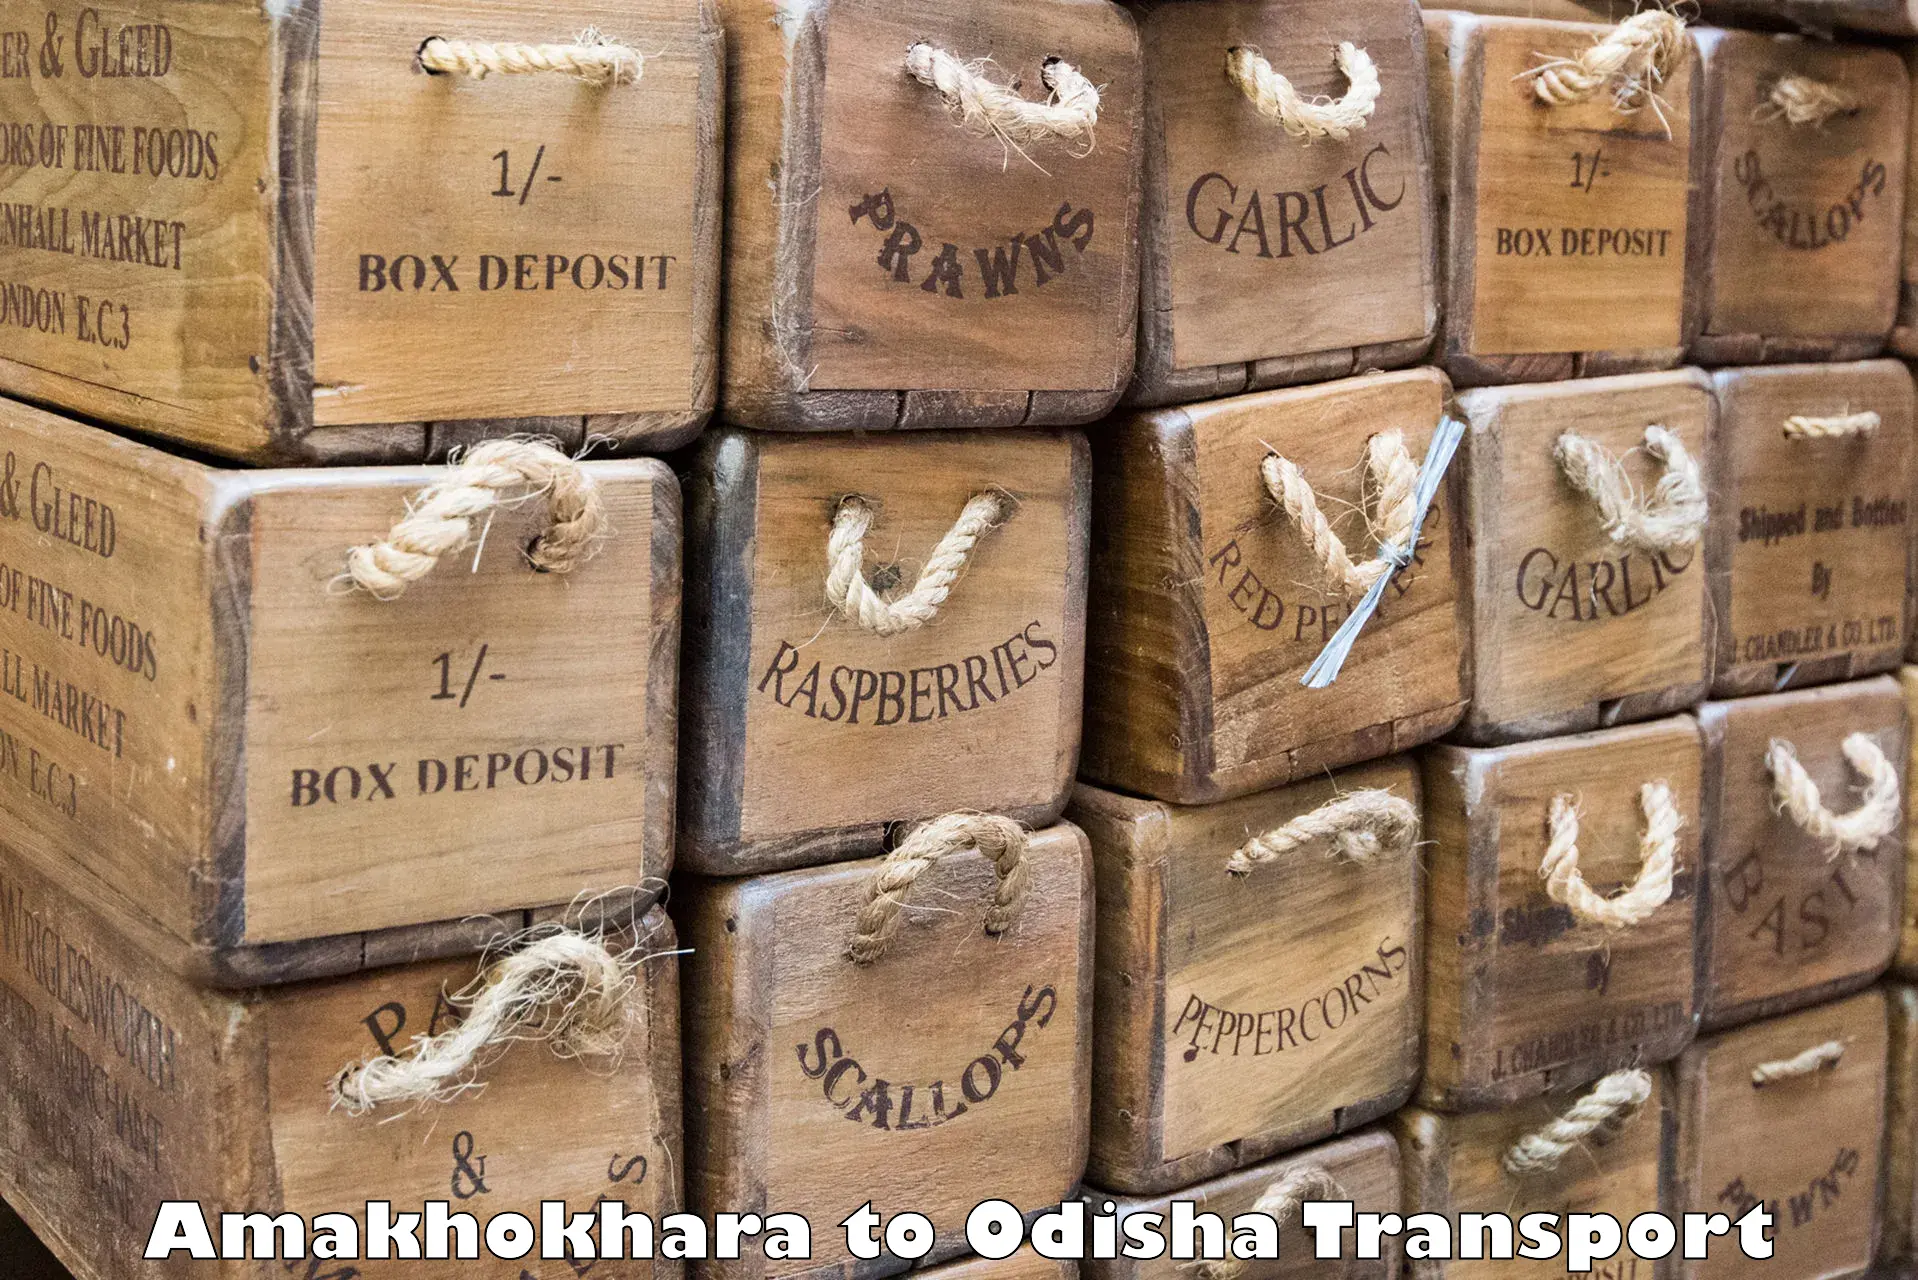 Parcel transport services Amakhokhara to Astaranga